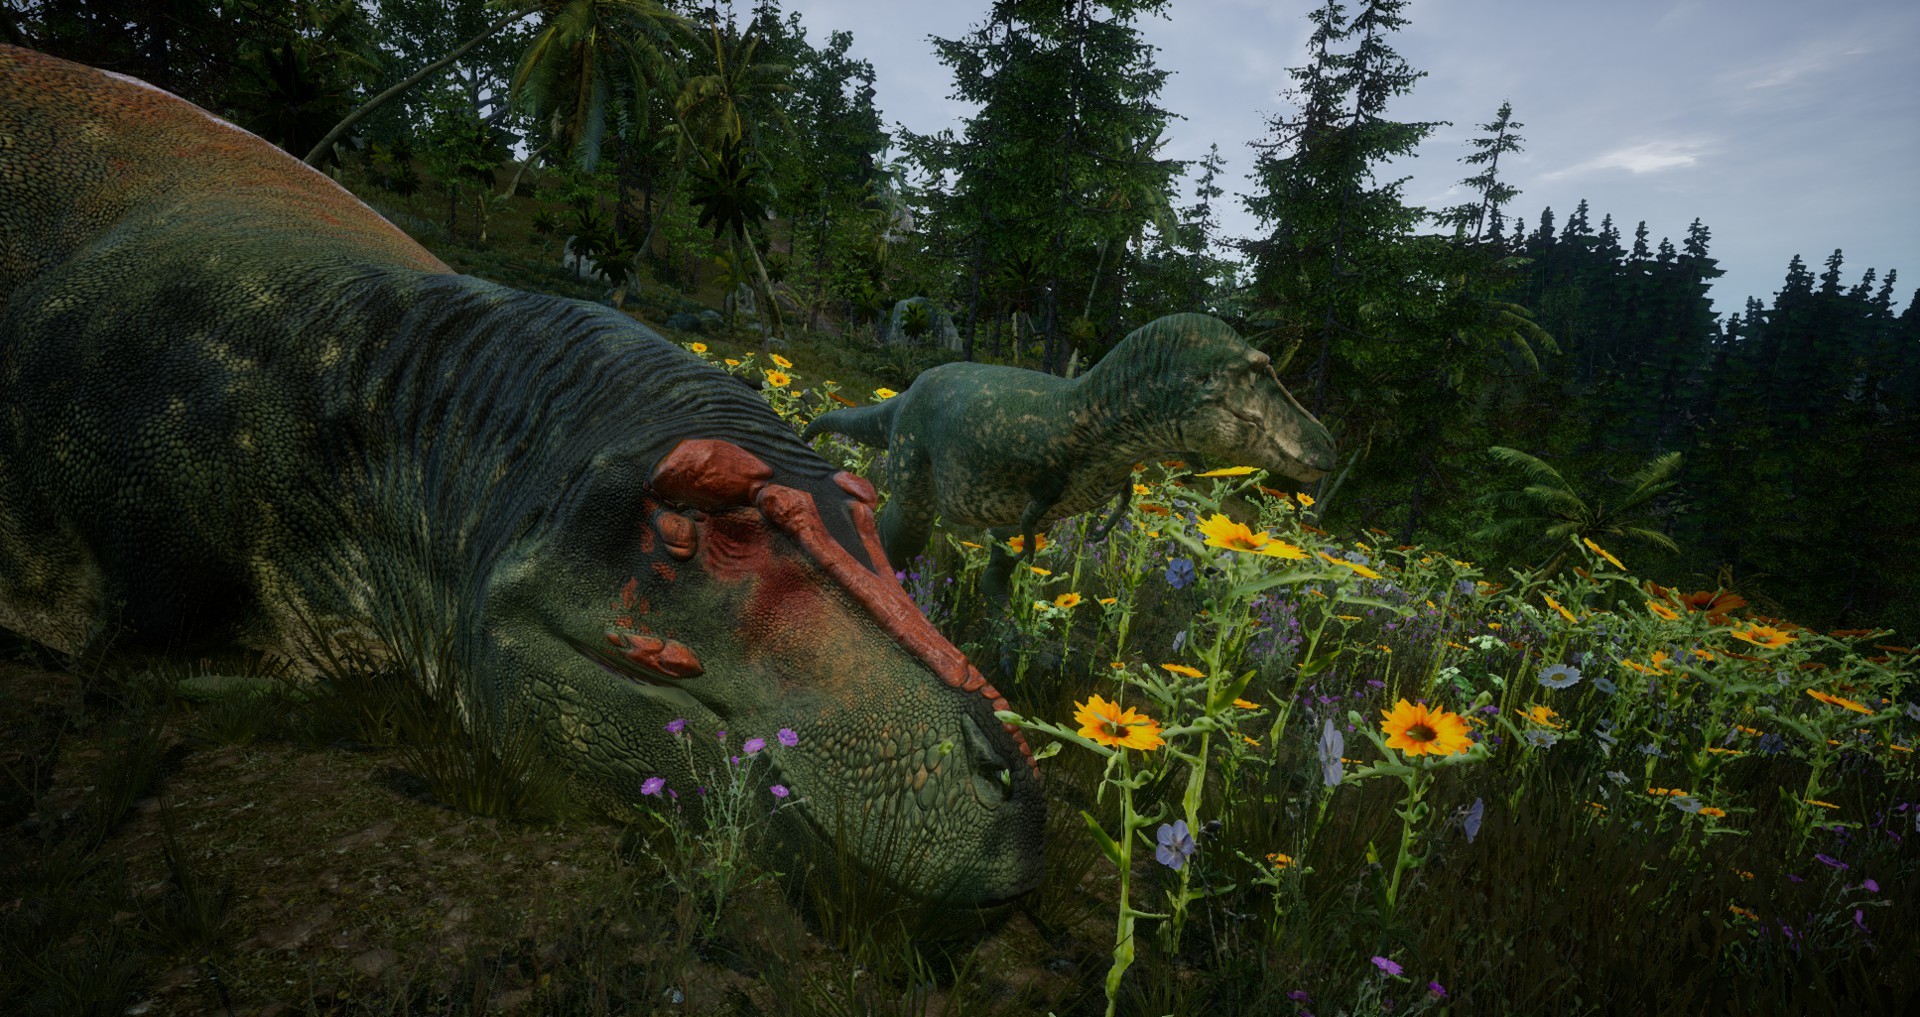 Tyrannosaurus adult next to a juvenile.